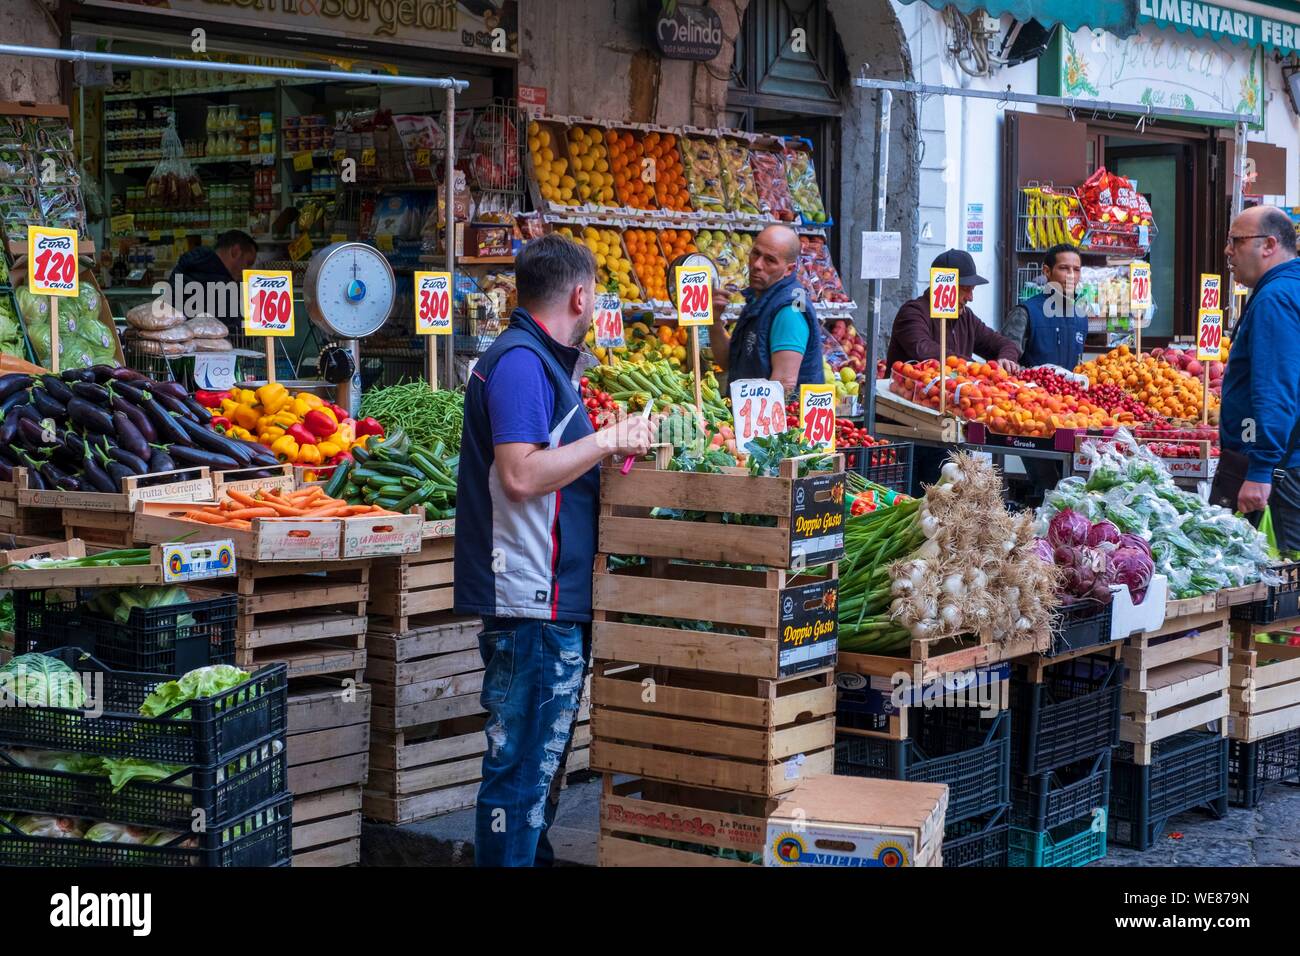 L'Italia, Campania, Napoli, centro storico elencati come patrimonio mondiale dall' UNESCO, mercato della Pignasecca, la frutta e la verdura Foto Stock